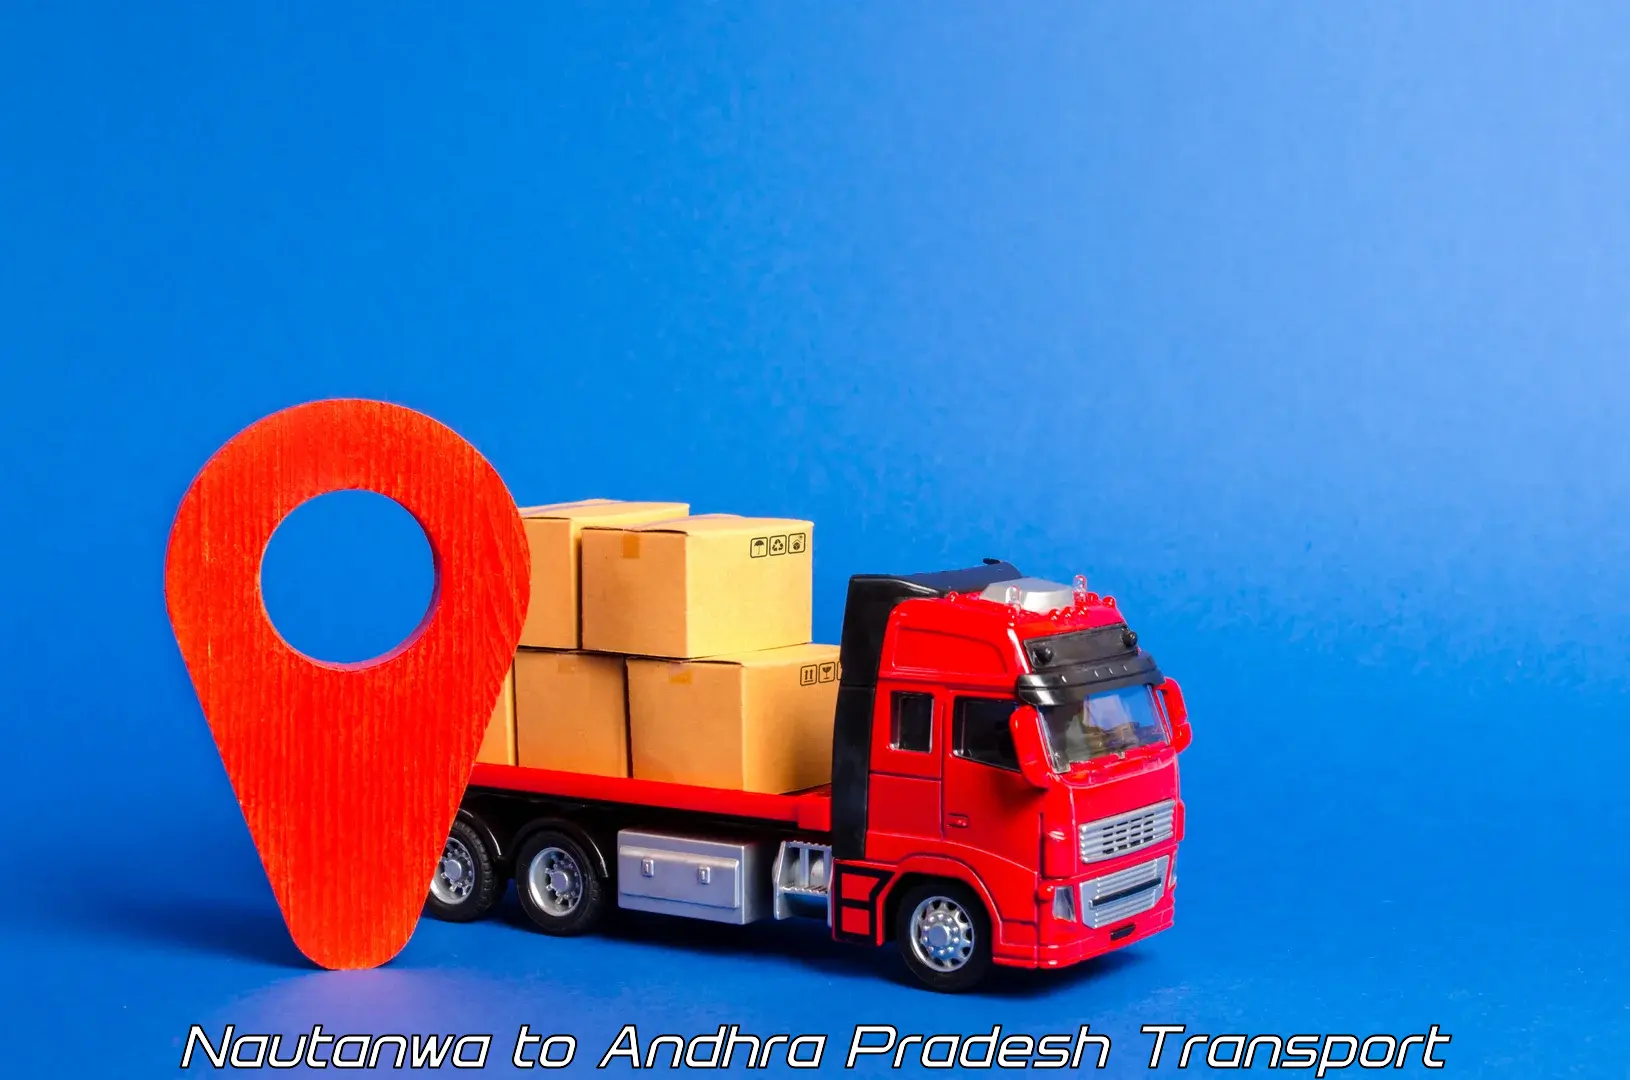 Truck transport companies in India Nautanwa to Changaroth